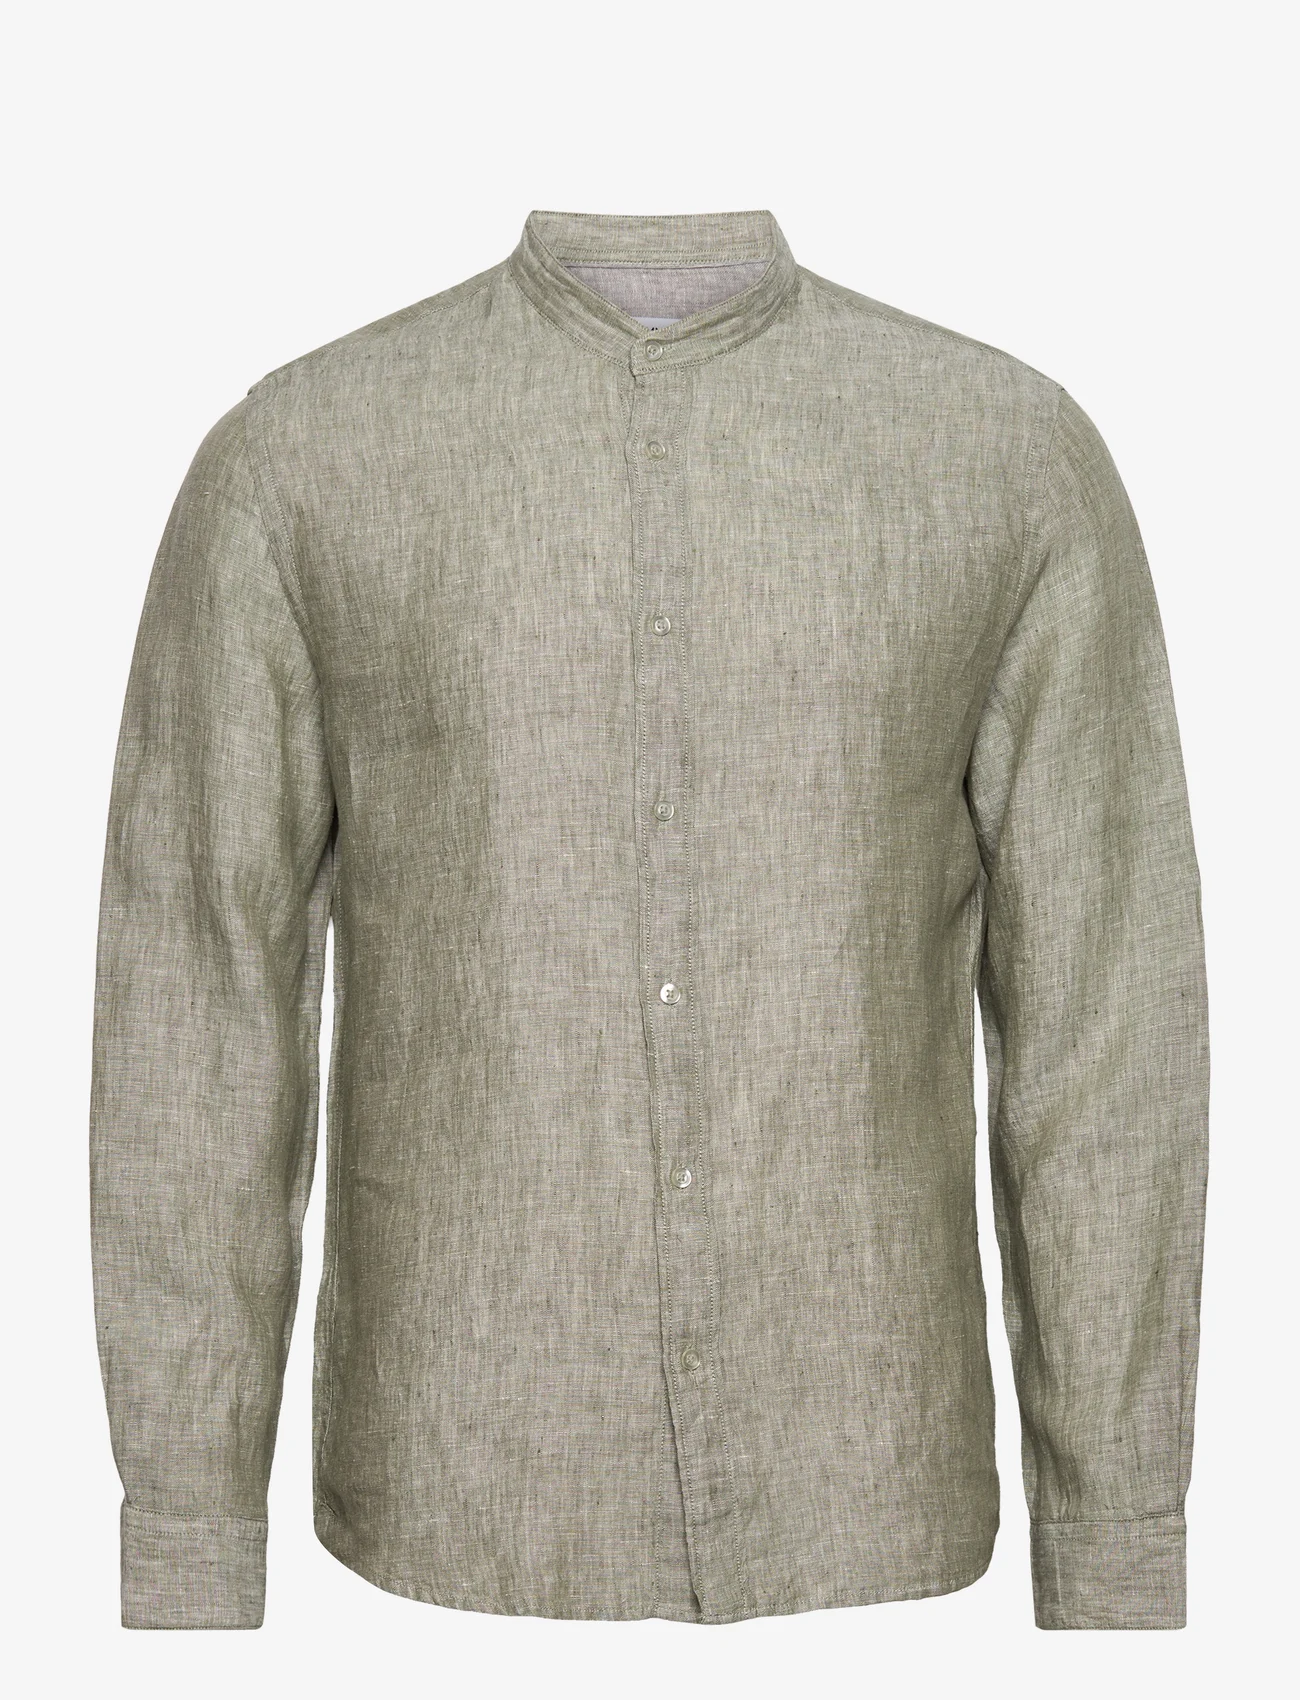 Mango - 100% linen Mao collar shirt - hørskjorter - beige - khaki - 0